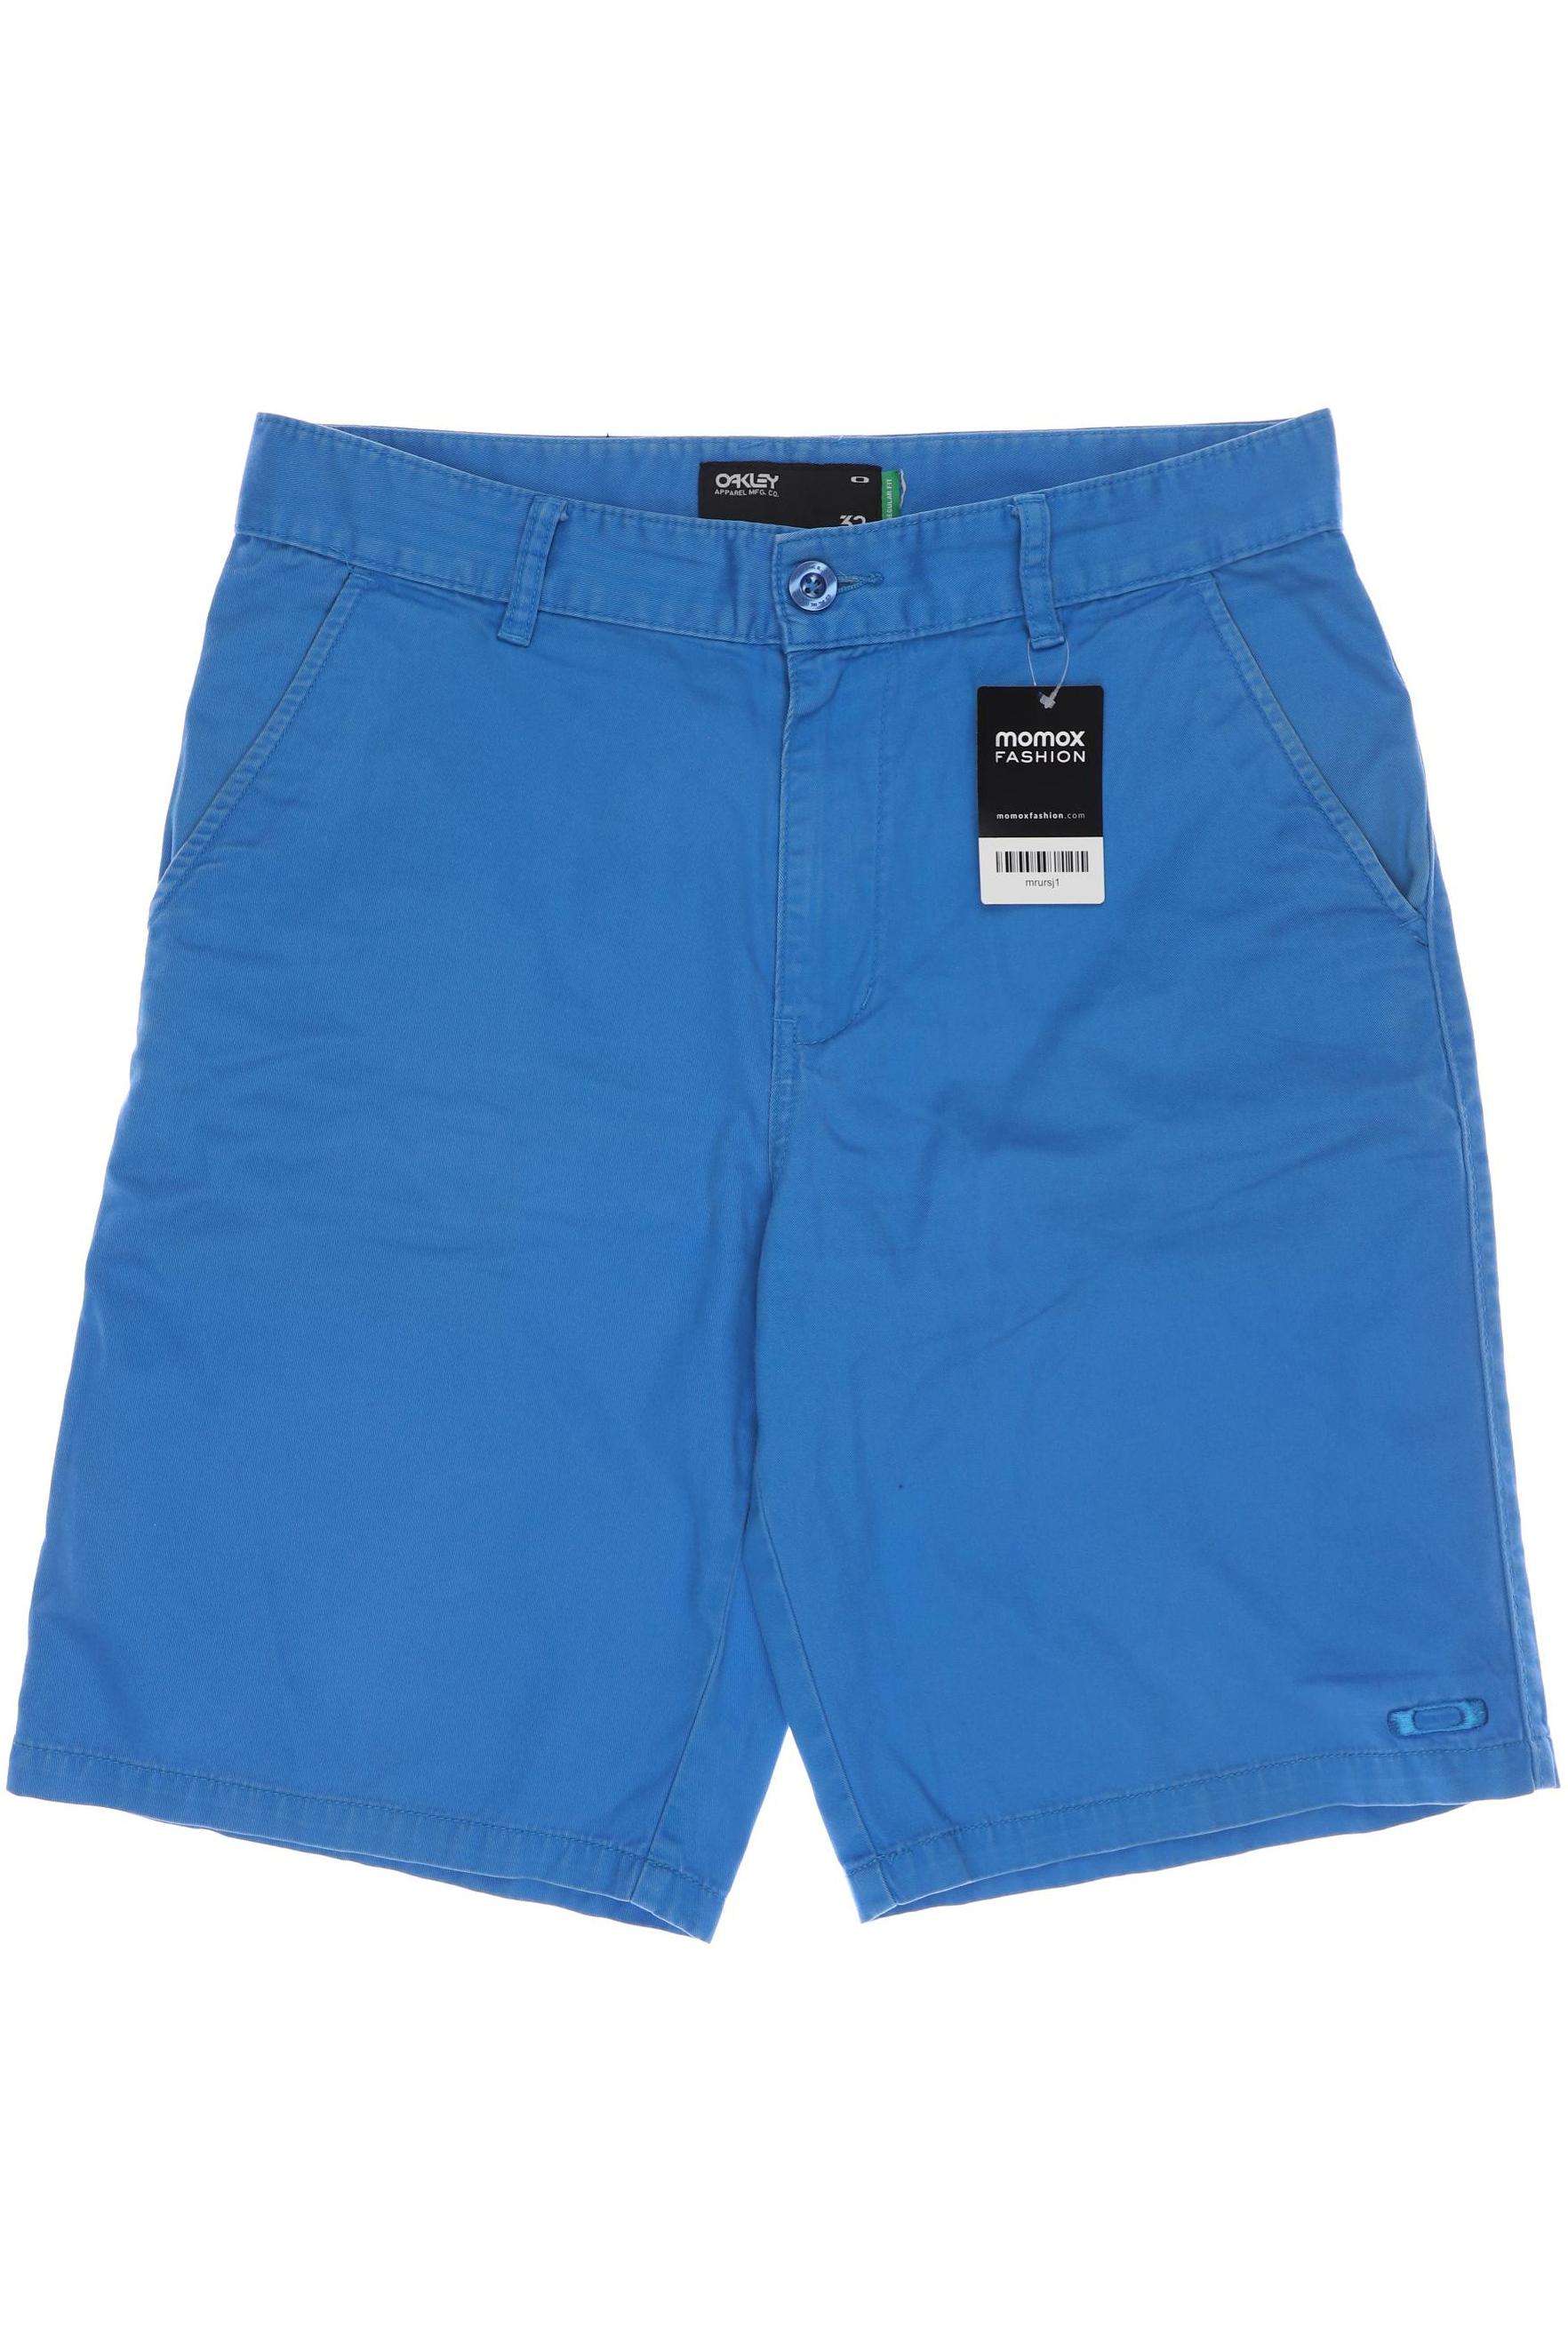 Oakley Herren Shorts, blau, Gr. 50 von Oakley